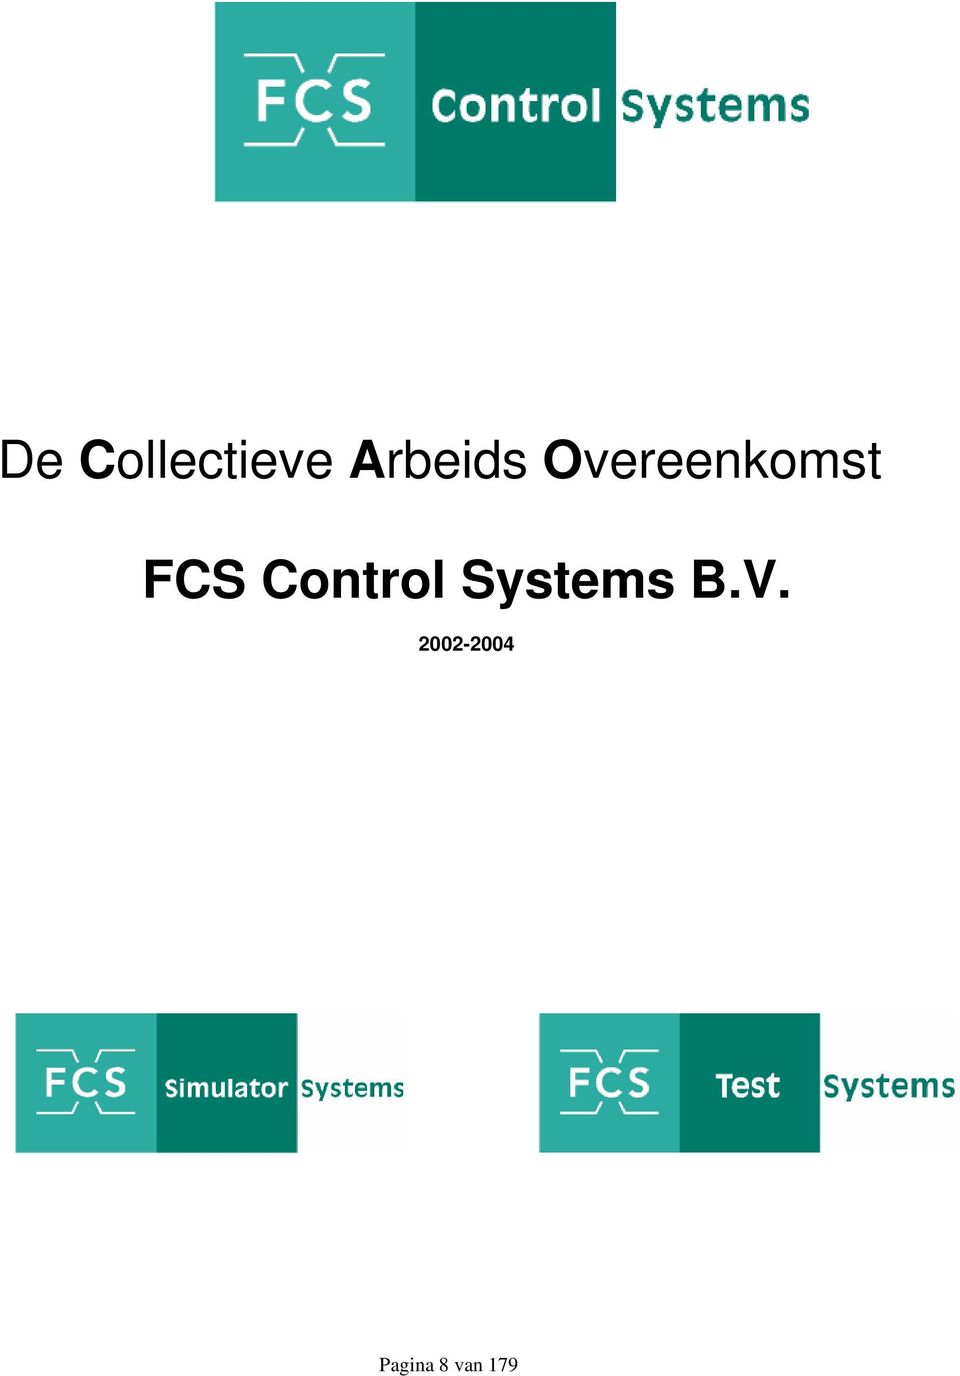 FCS Control Systems B.